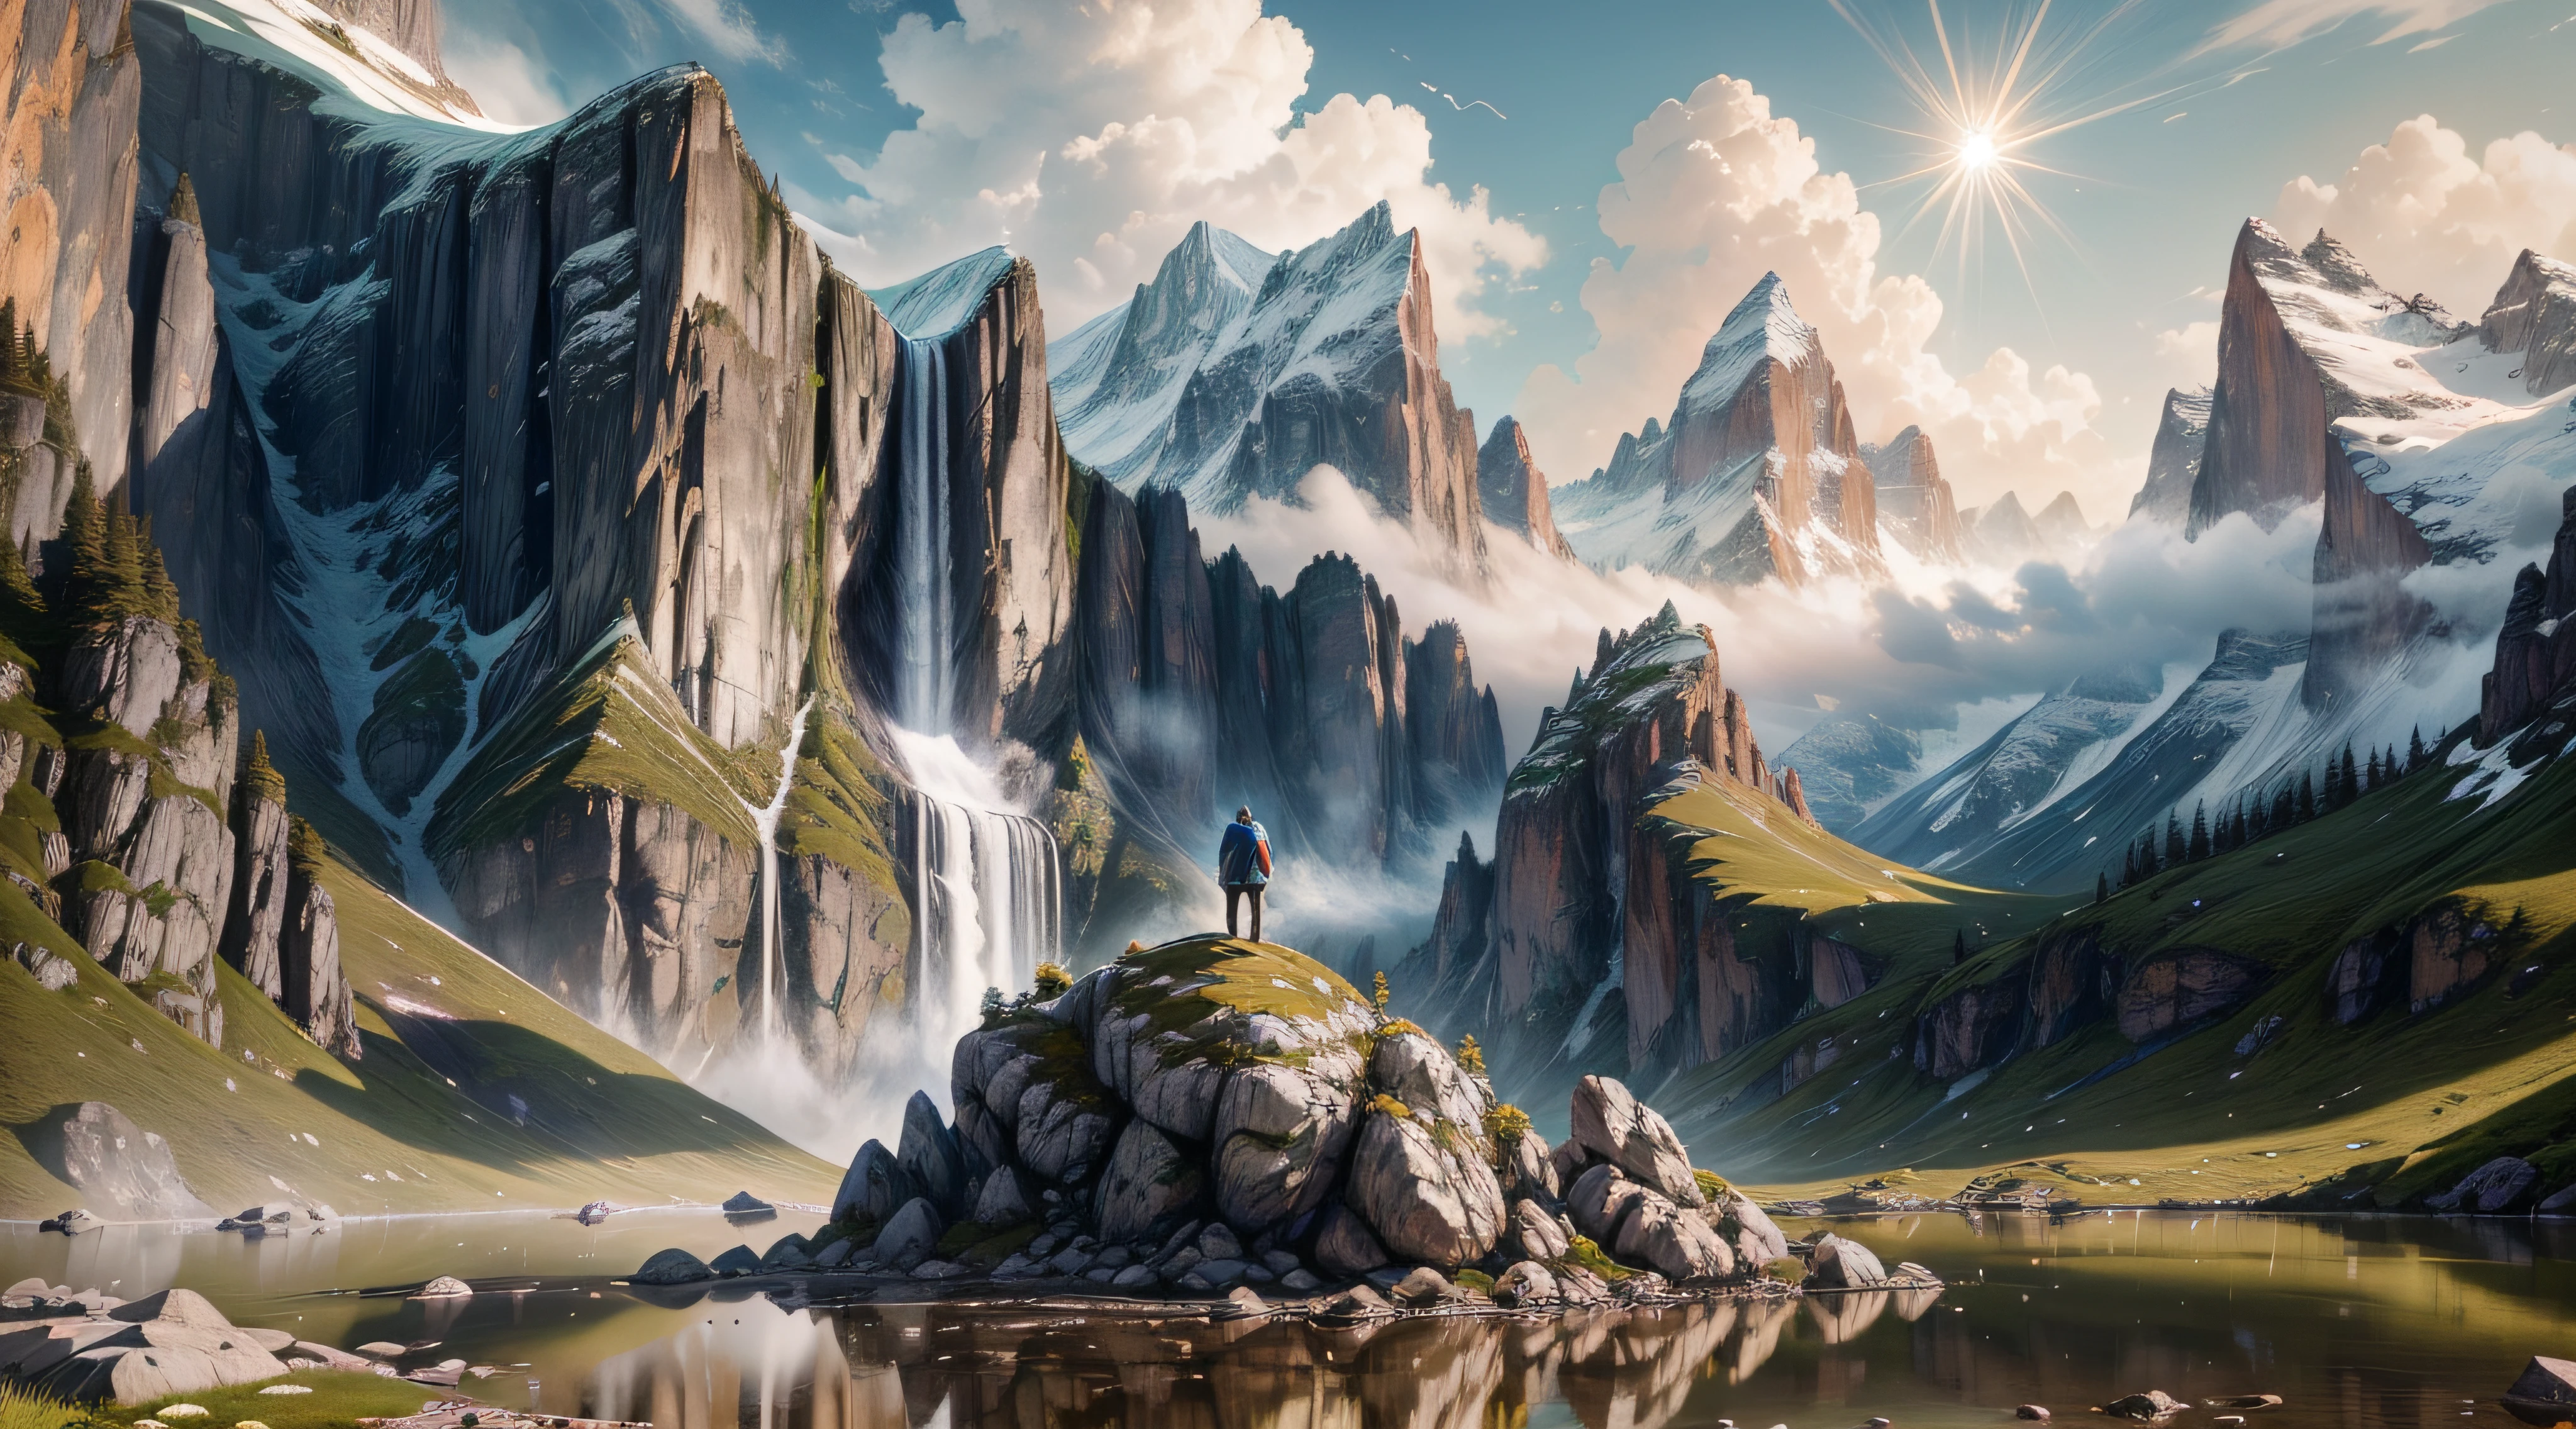 (Meisterwerk, fotorealistisch:1.4), atemberaubende Landschaft, schneebedeckte Berge, (sonnenverwöhnte Gipfel:1.2), kristallklarer Alpensee, saftig grüne Wiesen, (Wildblumen in voller Blüte:1.1), strahlend blauer Himmel, (flauschige weiße Wolken:1.2), komplizierte Felsformationen, (majestätischer Wasserfall:1.3), die Klippen hinabstürzend, (Spiegelung im ruhigen Wasser:1.2), entfernte Kiefernwälder, (Vögel schweben im Himmel:1.1), Sonnenstrahlen durchdringen die Bäume, ruhige Atmosphäre, (Wanderer steht auf einer Klippe:1.3), Genießen Sie die atemberaubende Aussicht, (beste Qualität, hohe Auflösung:1.3), RAW-Foto, UHD, 8K